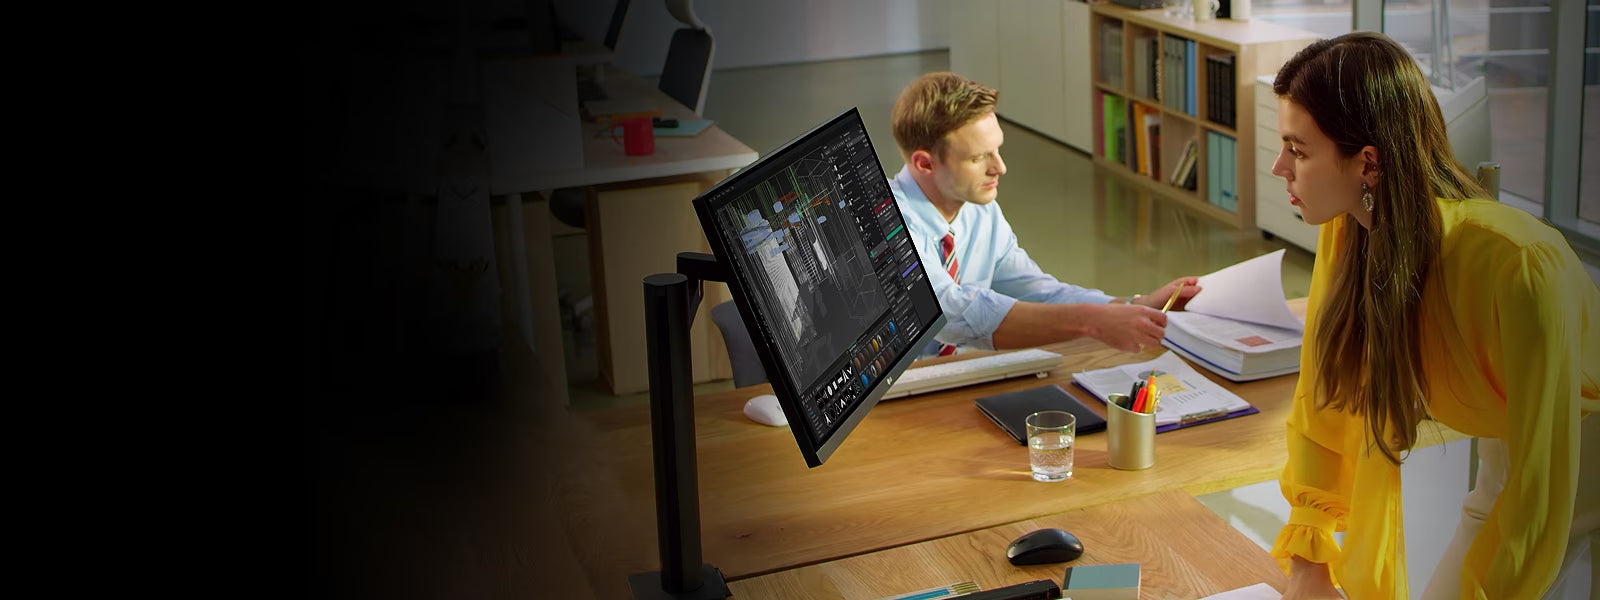 Asztali monitor tartó ergo állványra felszerelt LG monitor irodai környezetben.